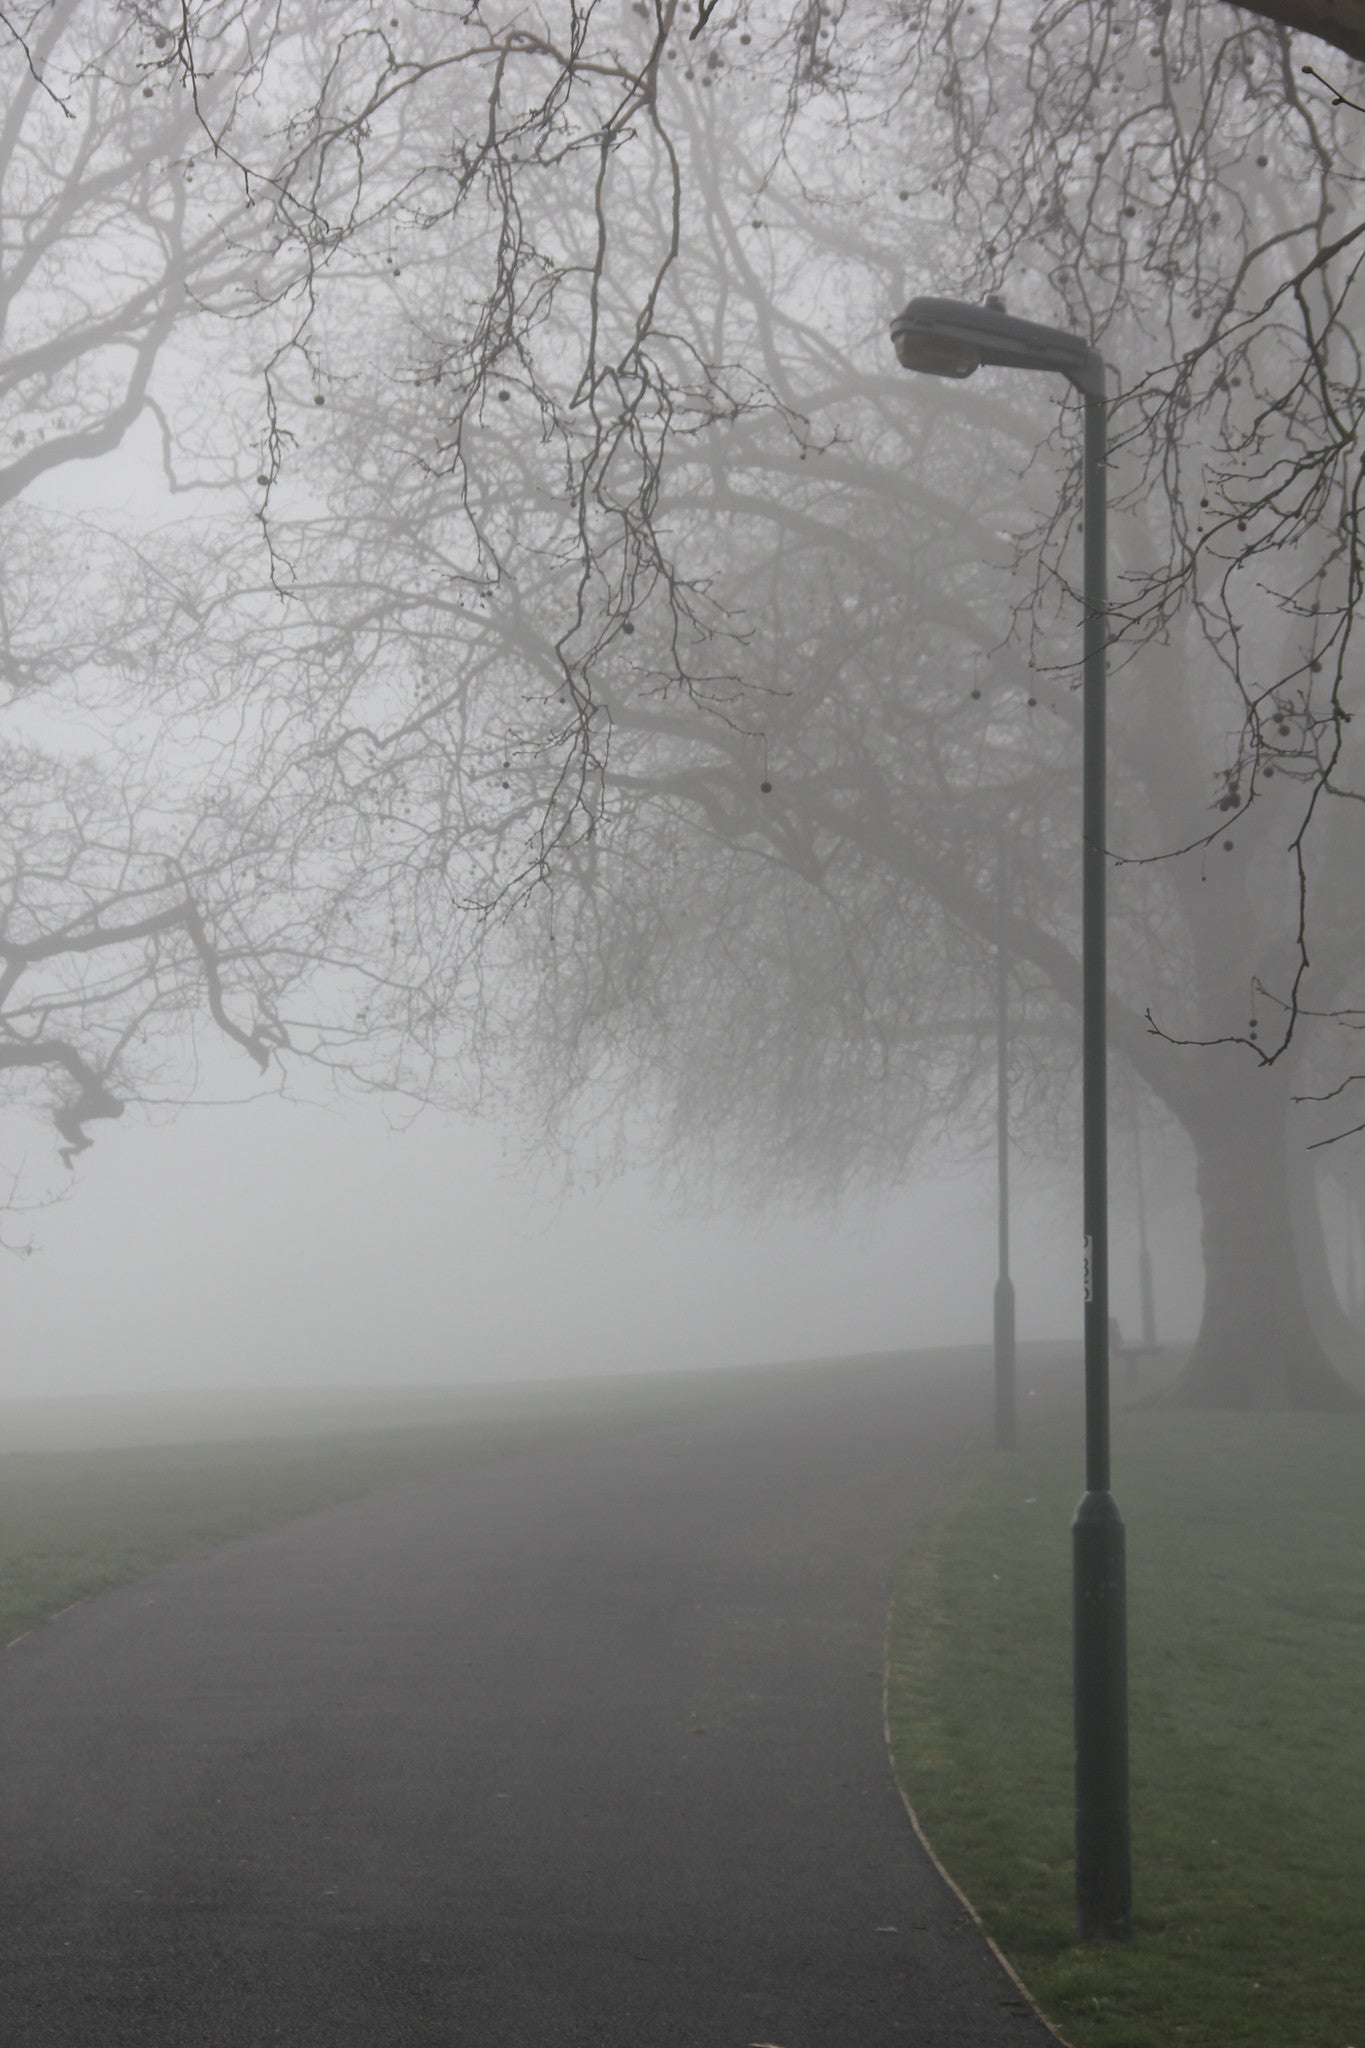 Hilly Fields in the Fog, Lewisham, London